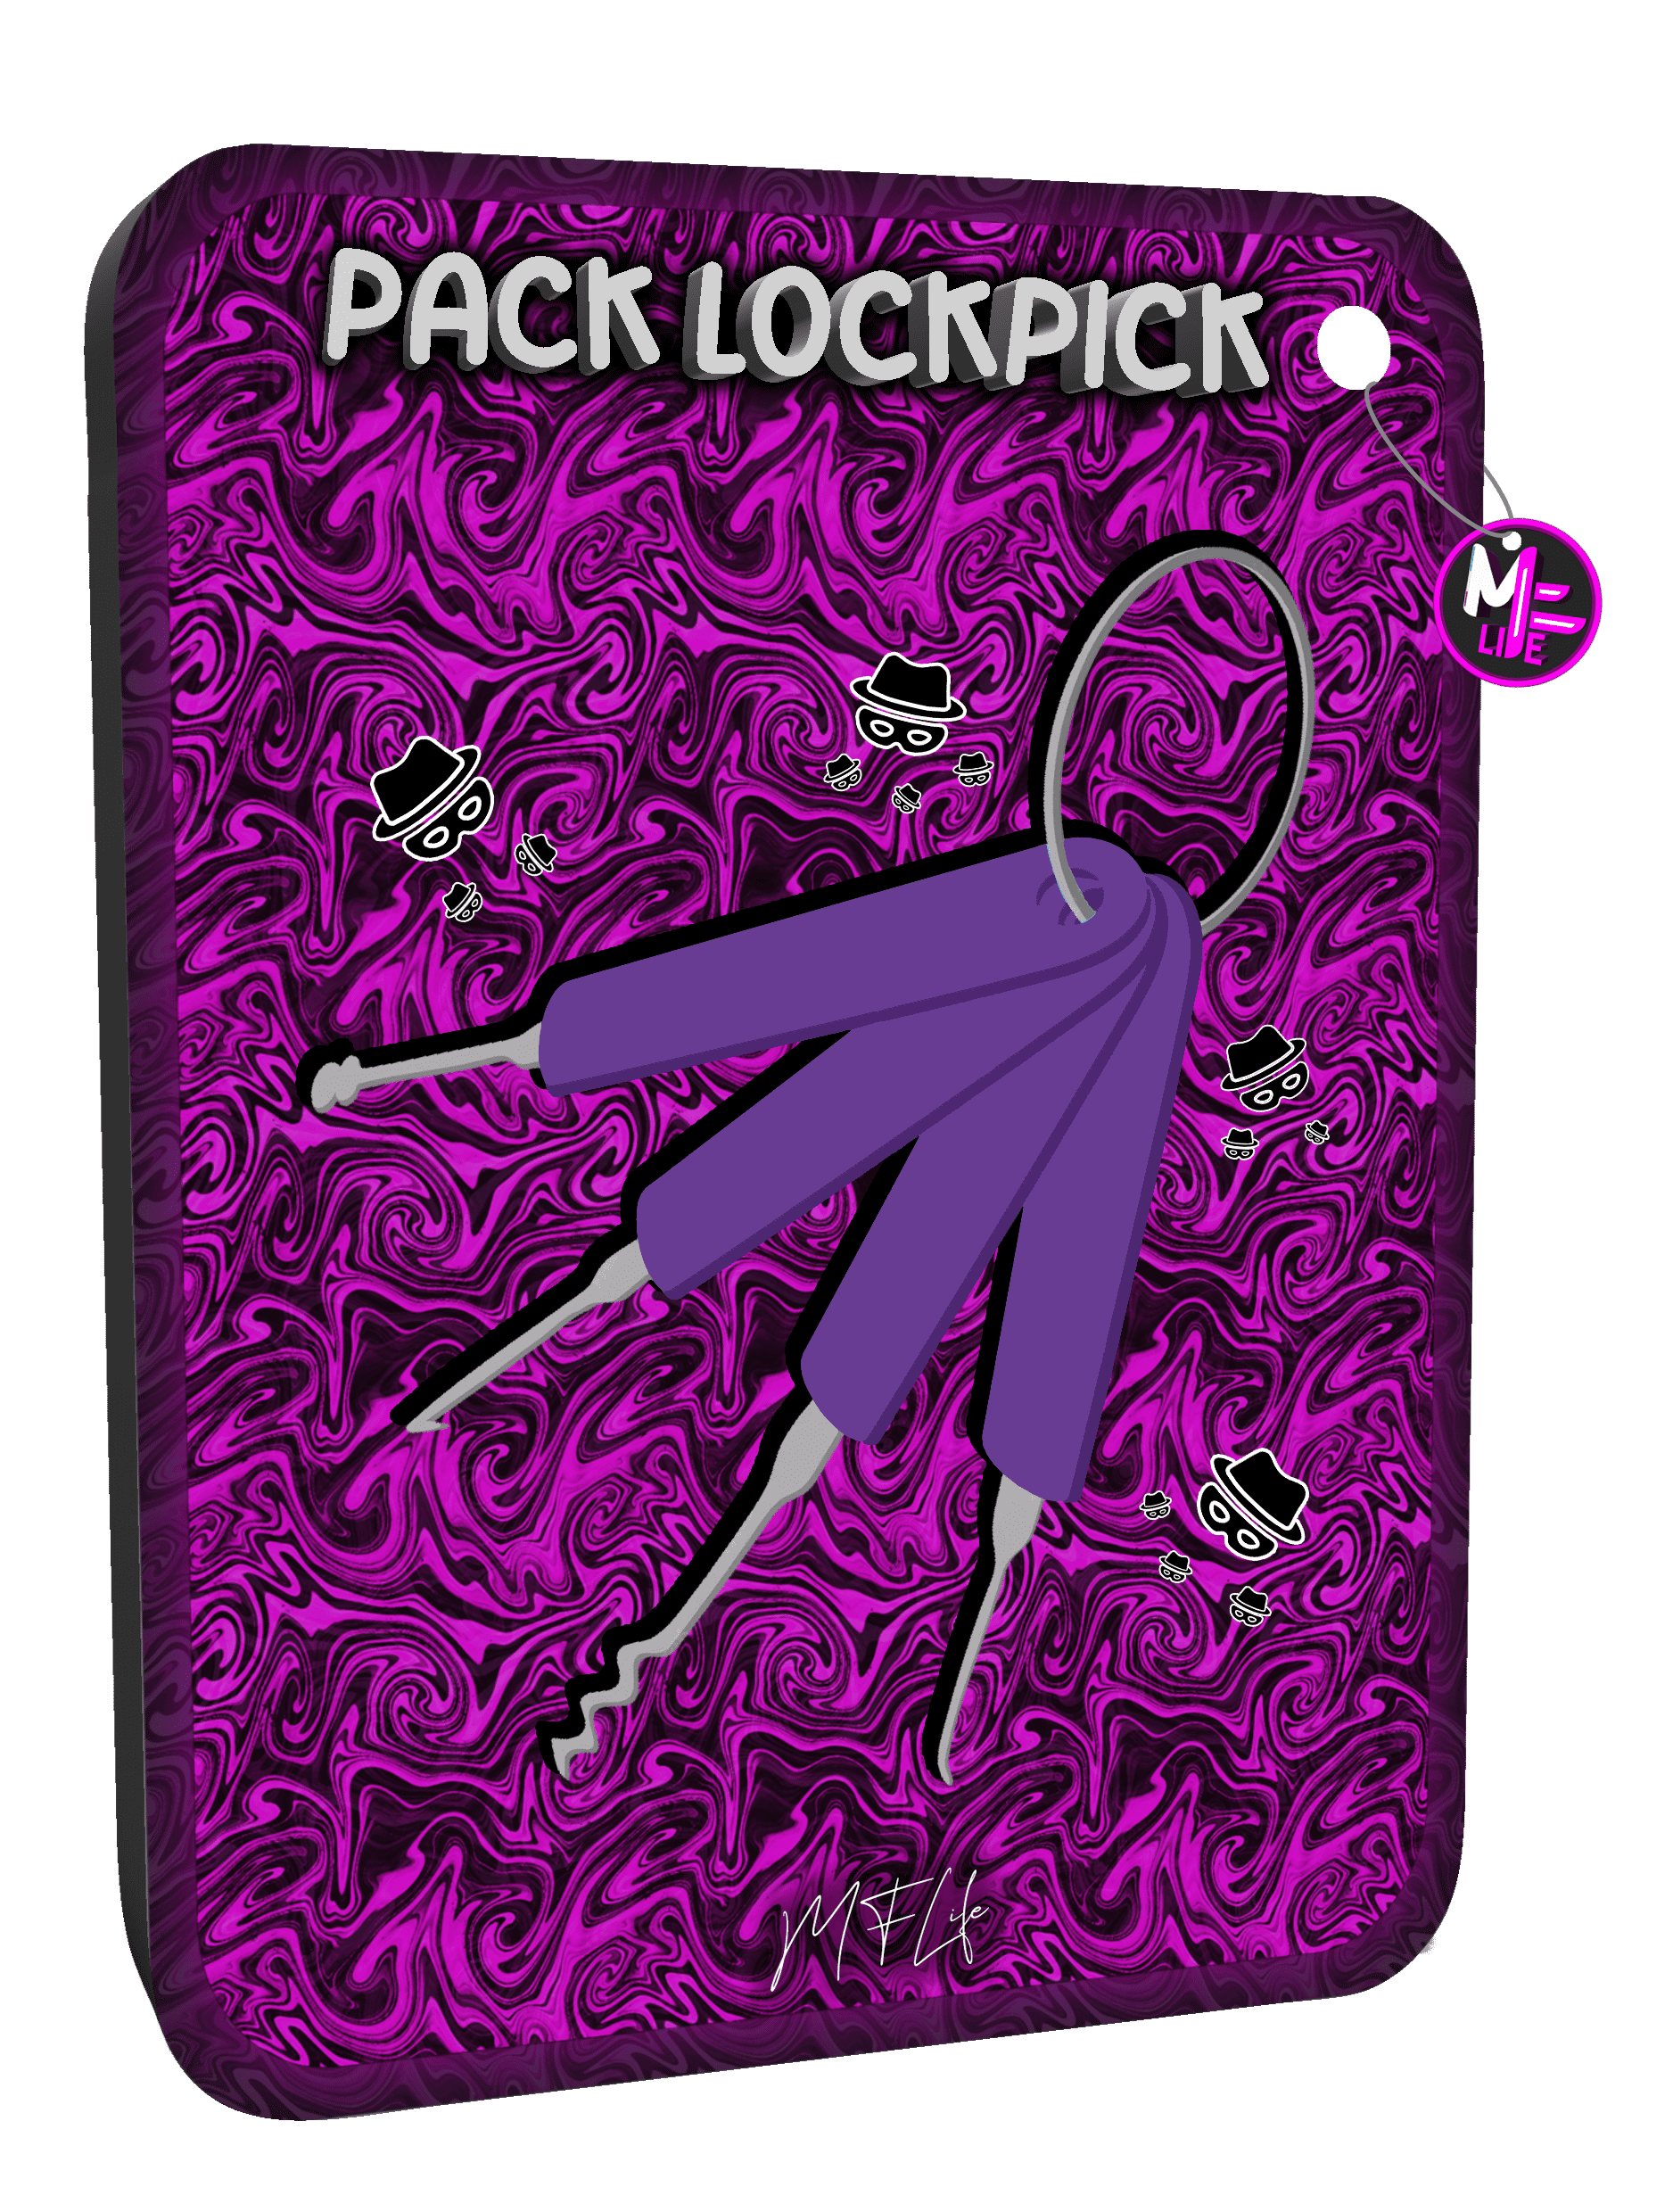 Pack Lockpick